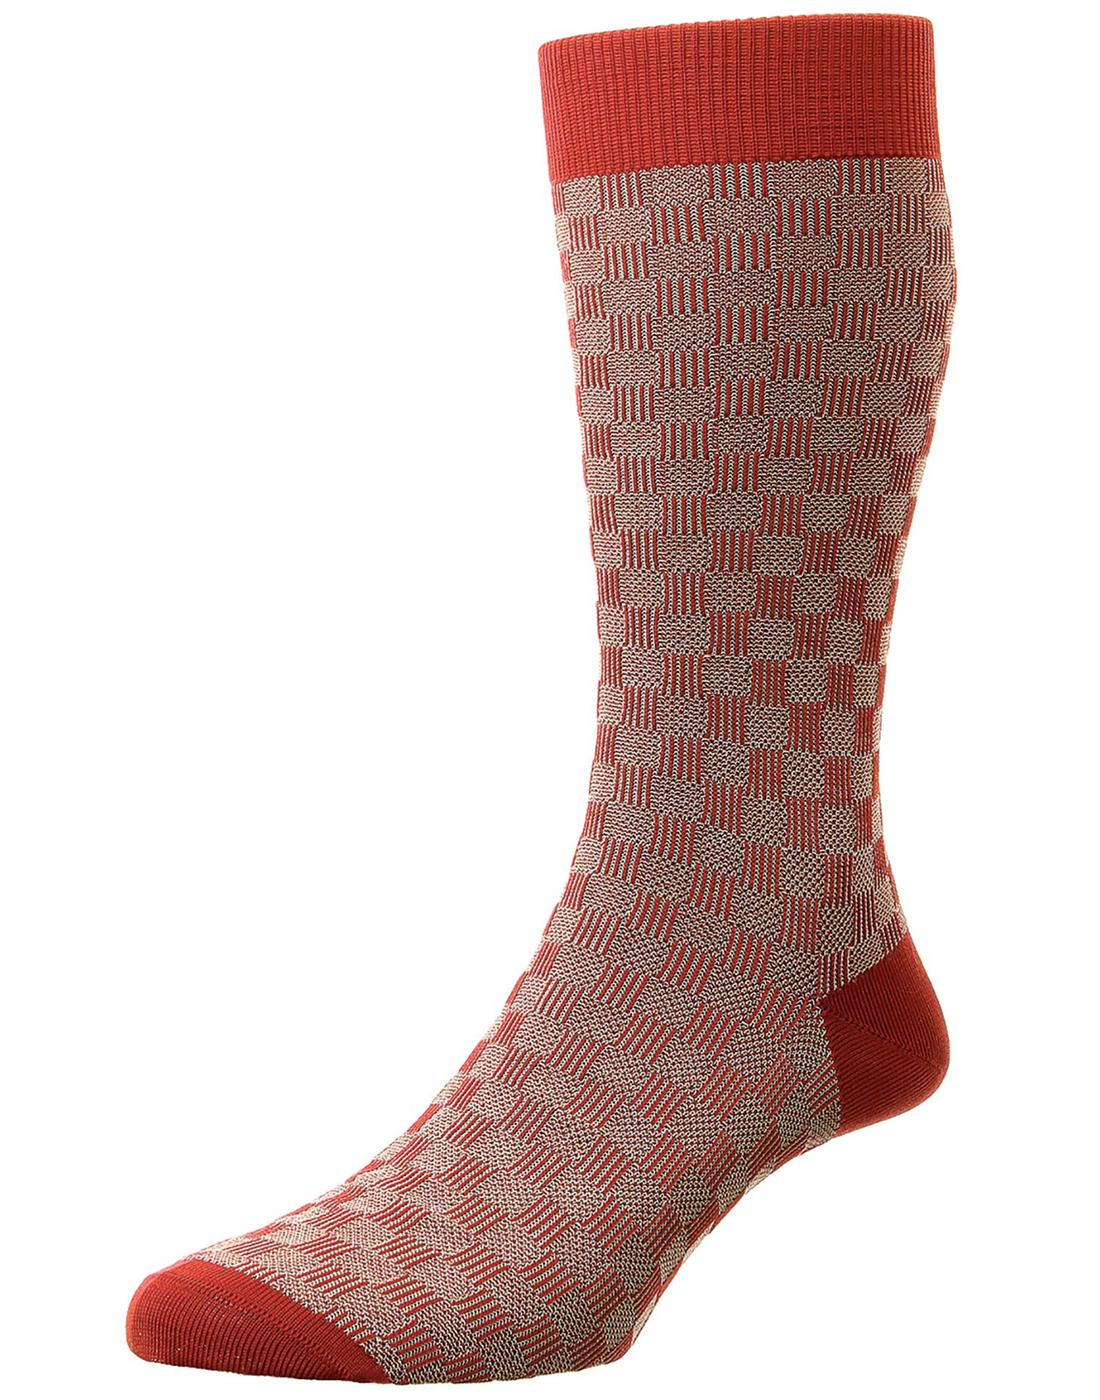 + Patino PANTHERELLA Men's 3D Basketweave Socks R